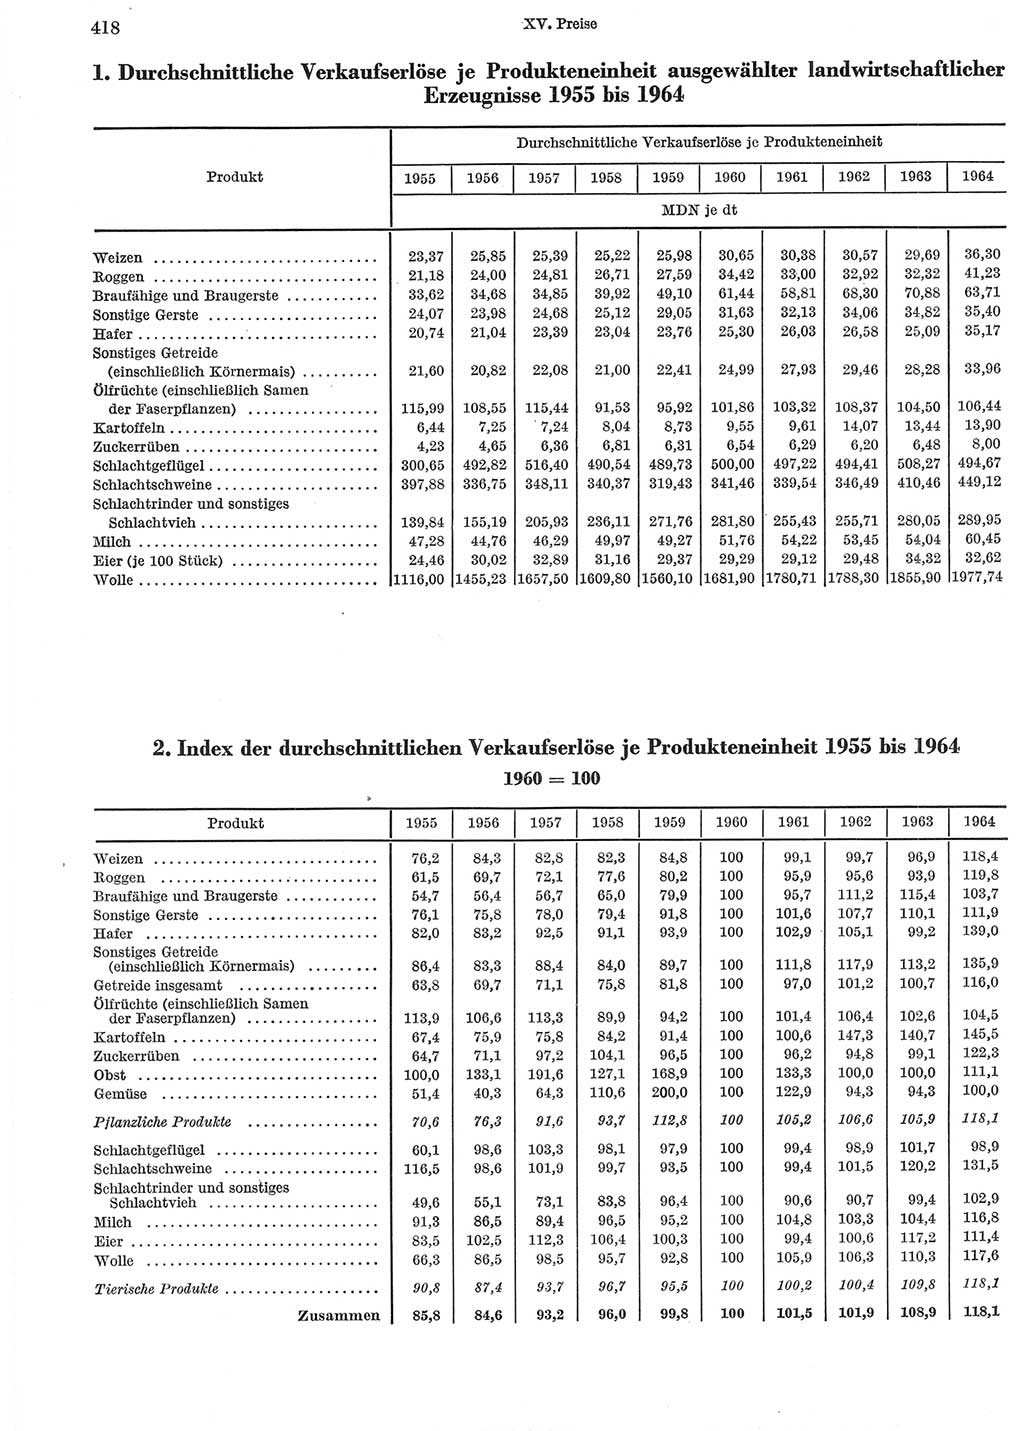 Statistisches Jahrbuch der Deutschen Demokratischen Republik (DDR) 1965, Seite 418 (Stat. Jb. DDR 1965, S. 418)